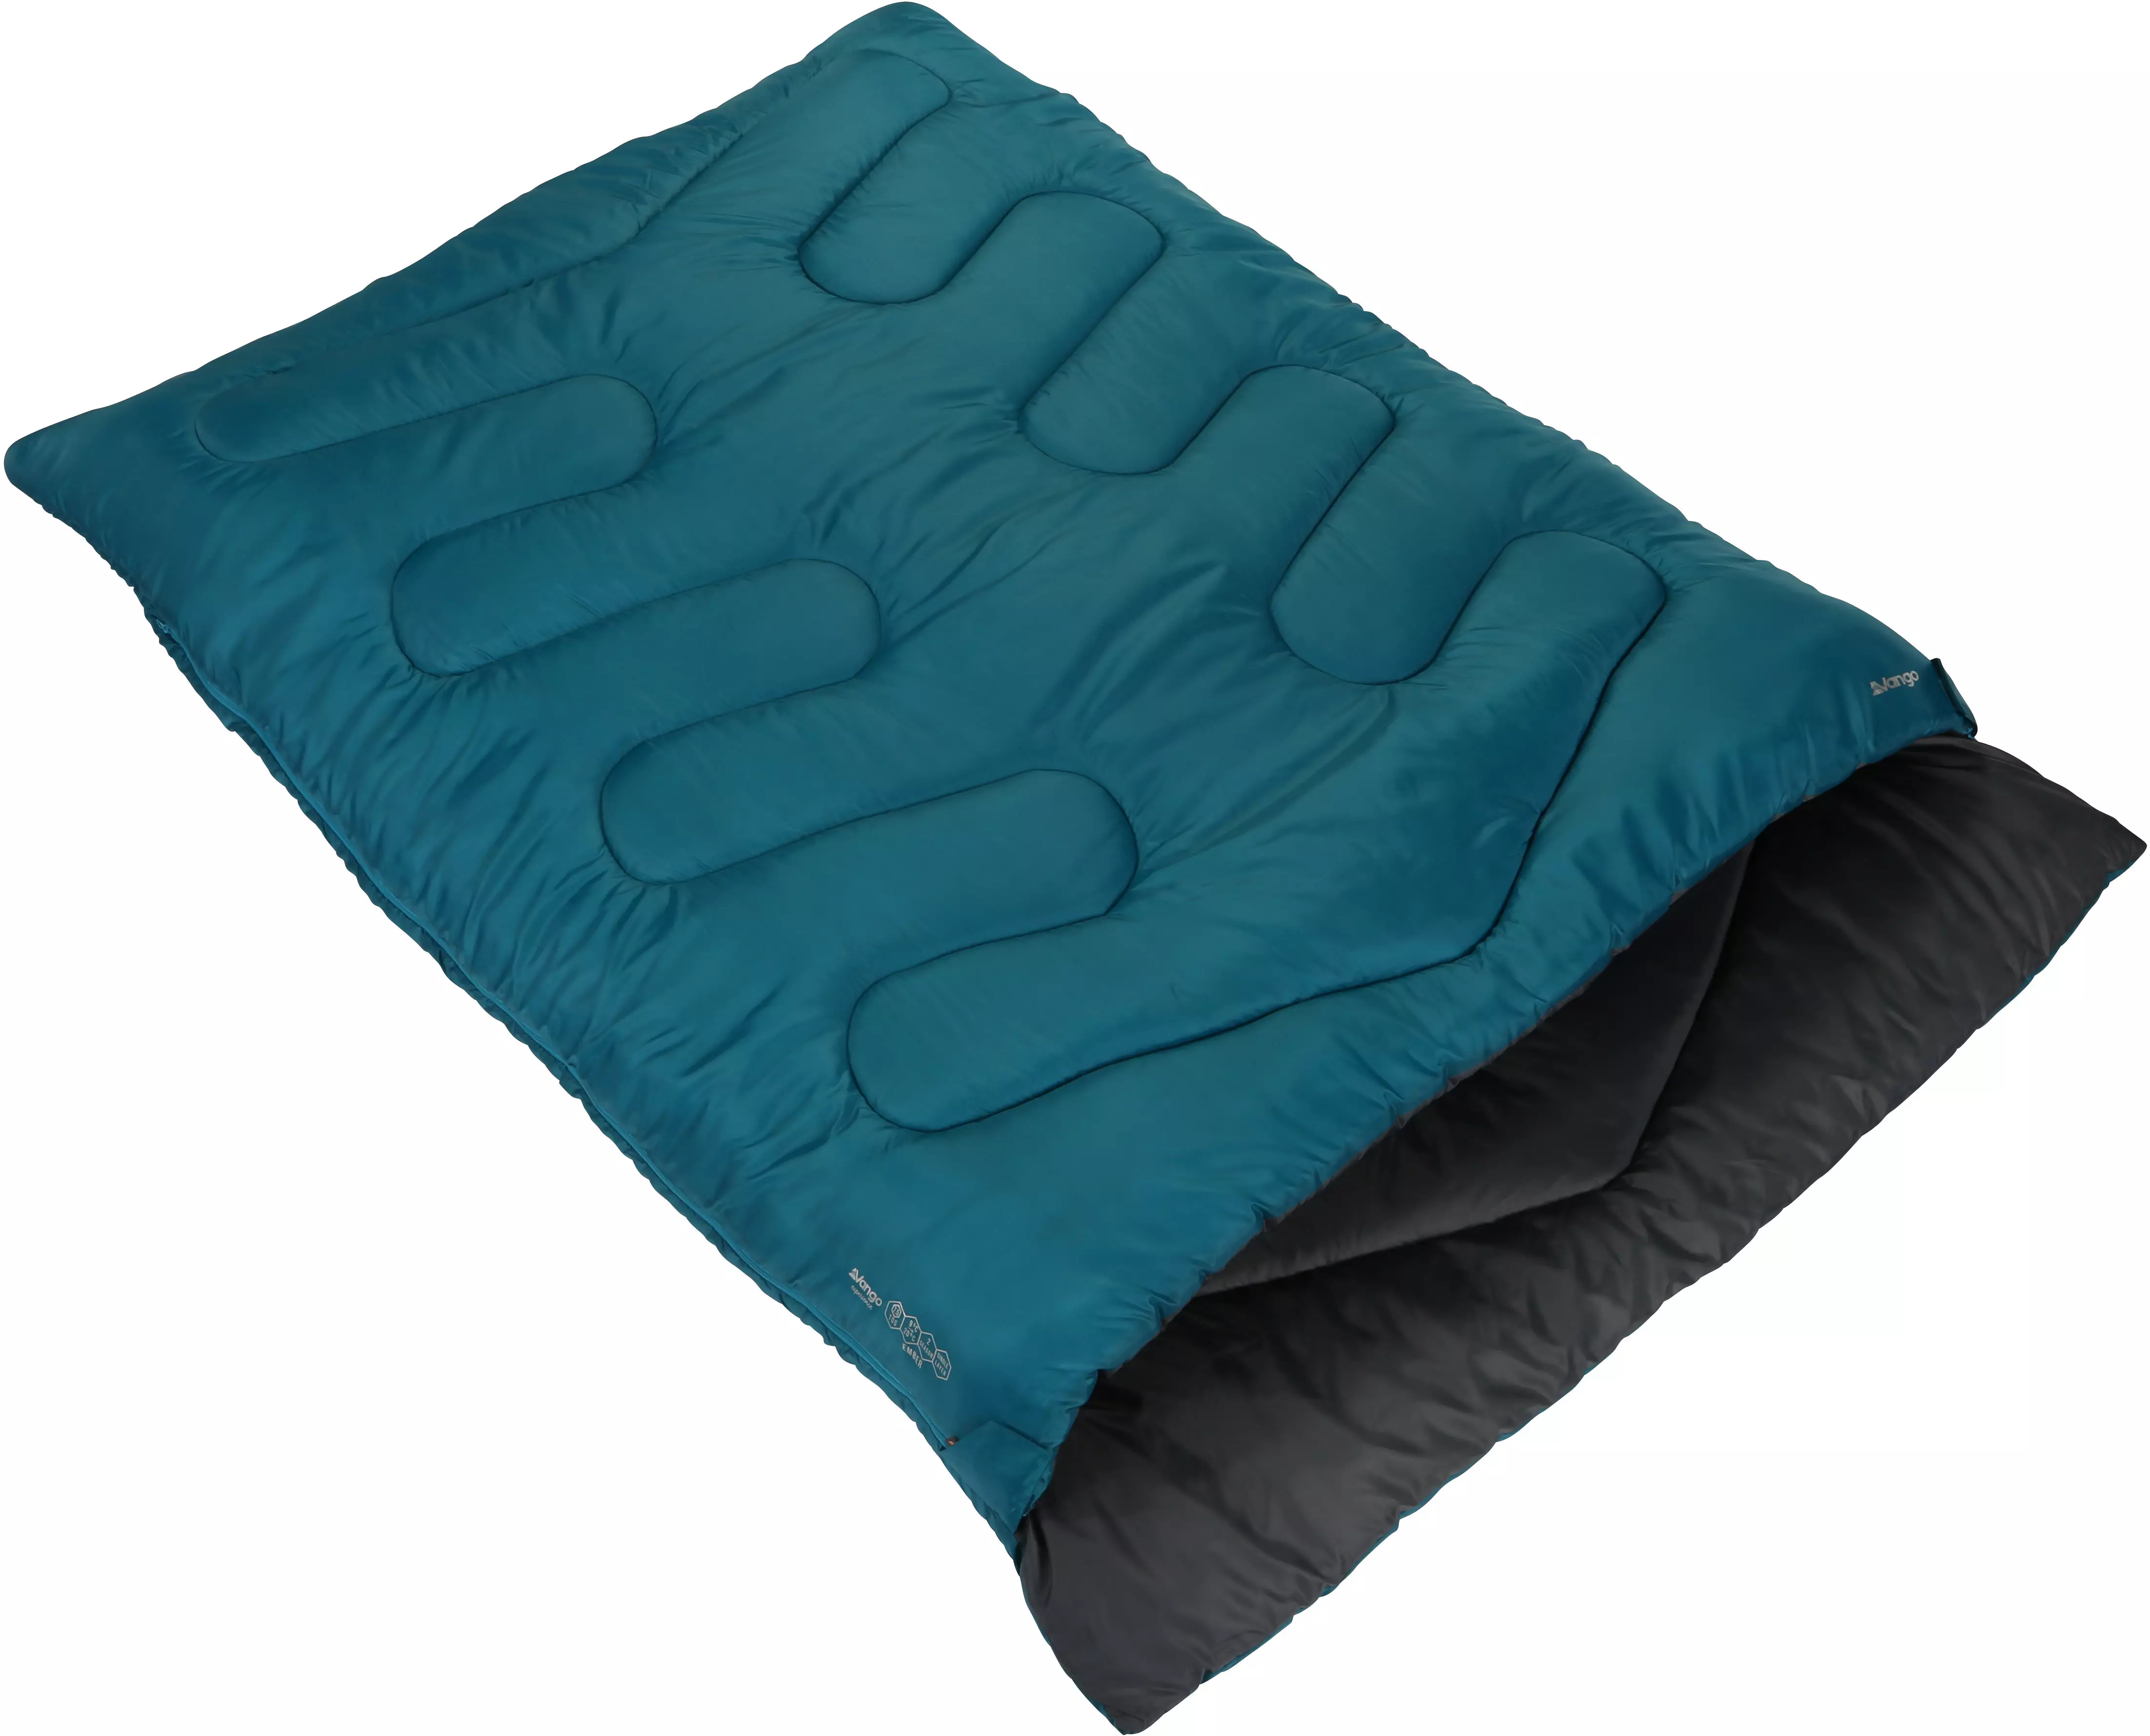 fleece lined double sleeping bag